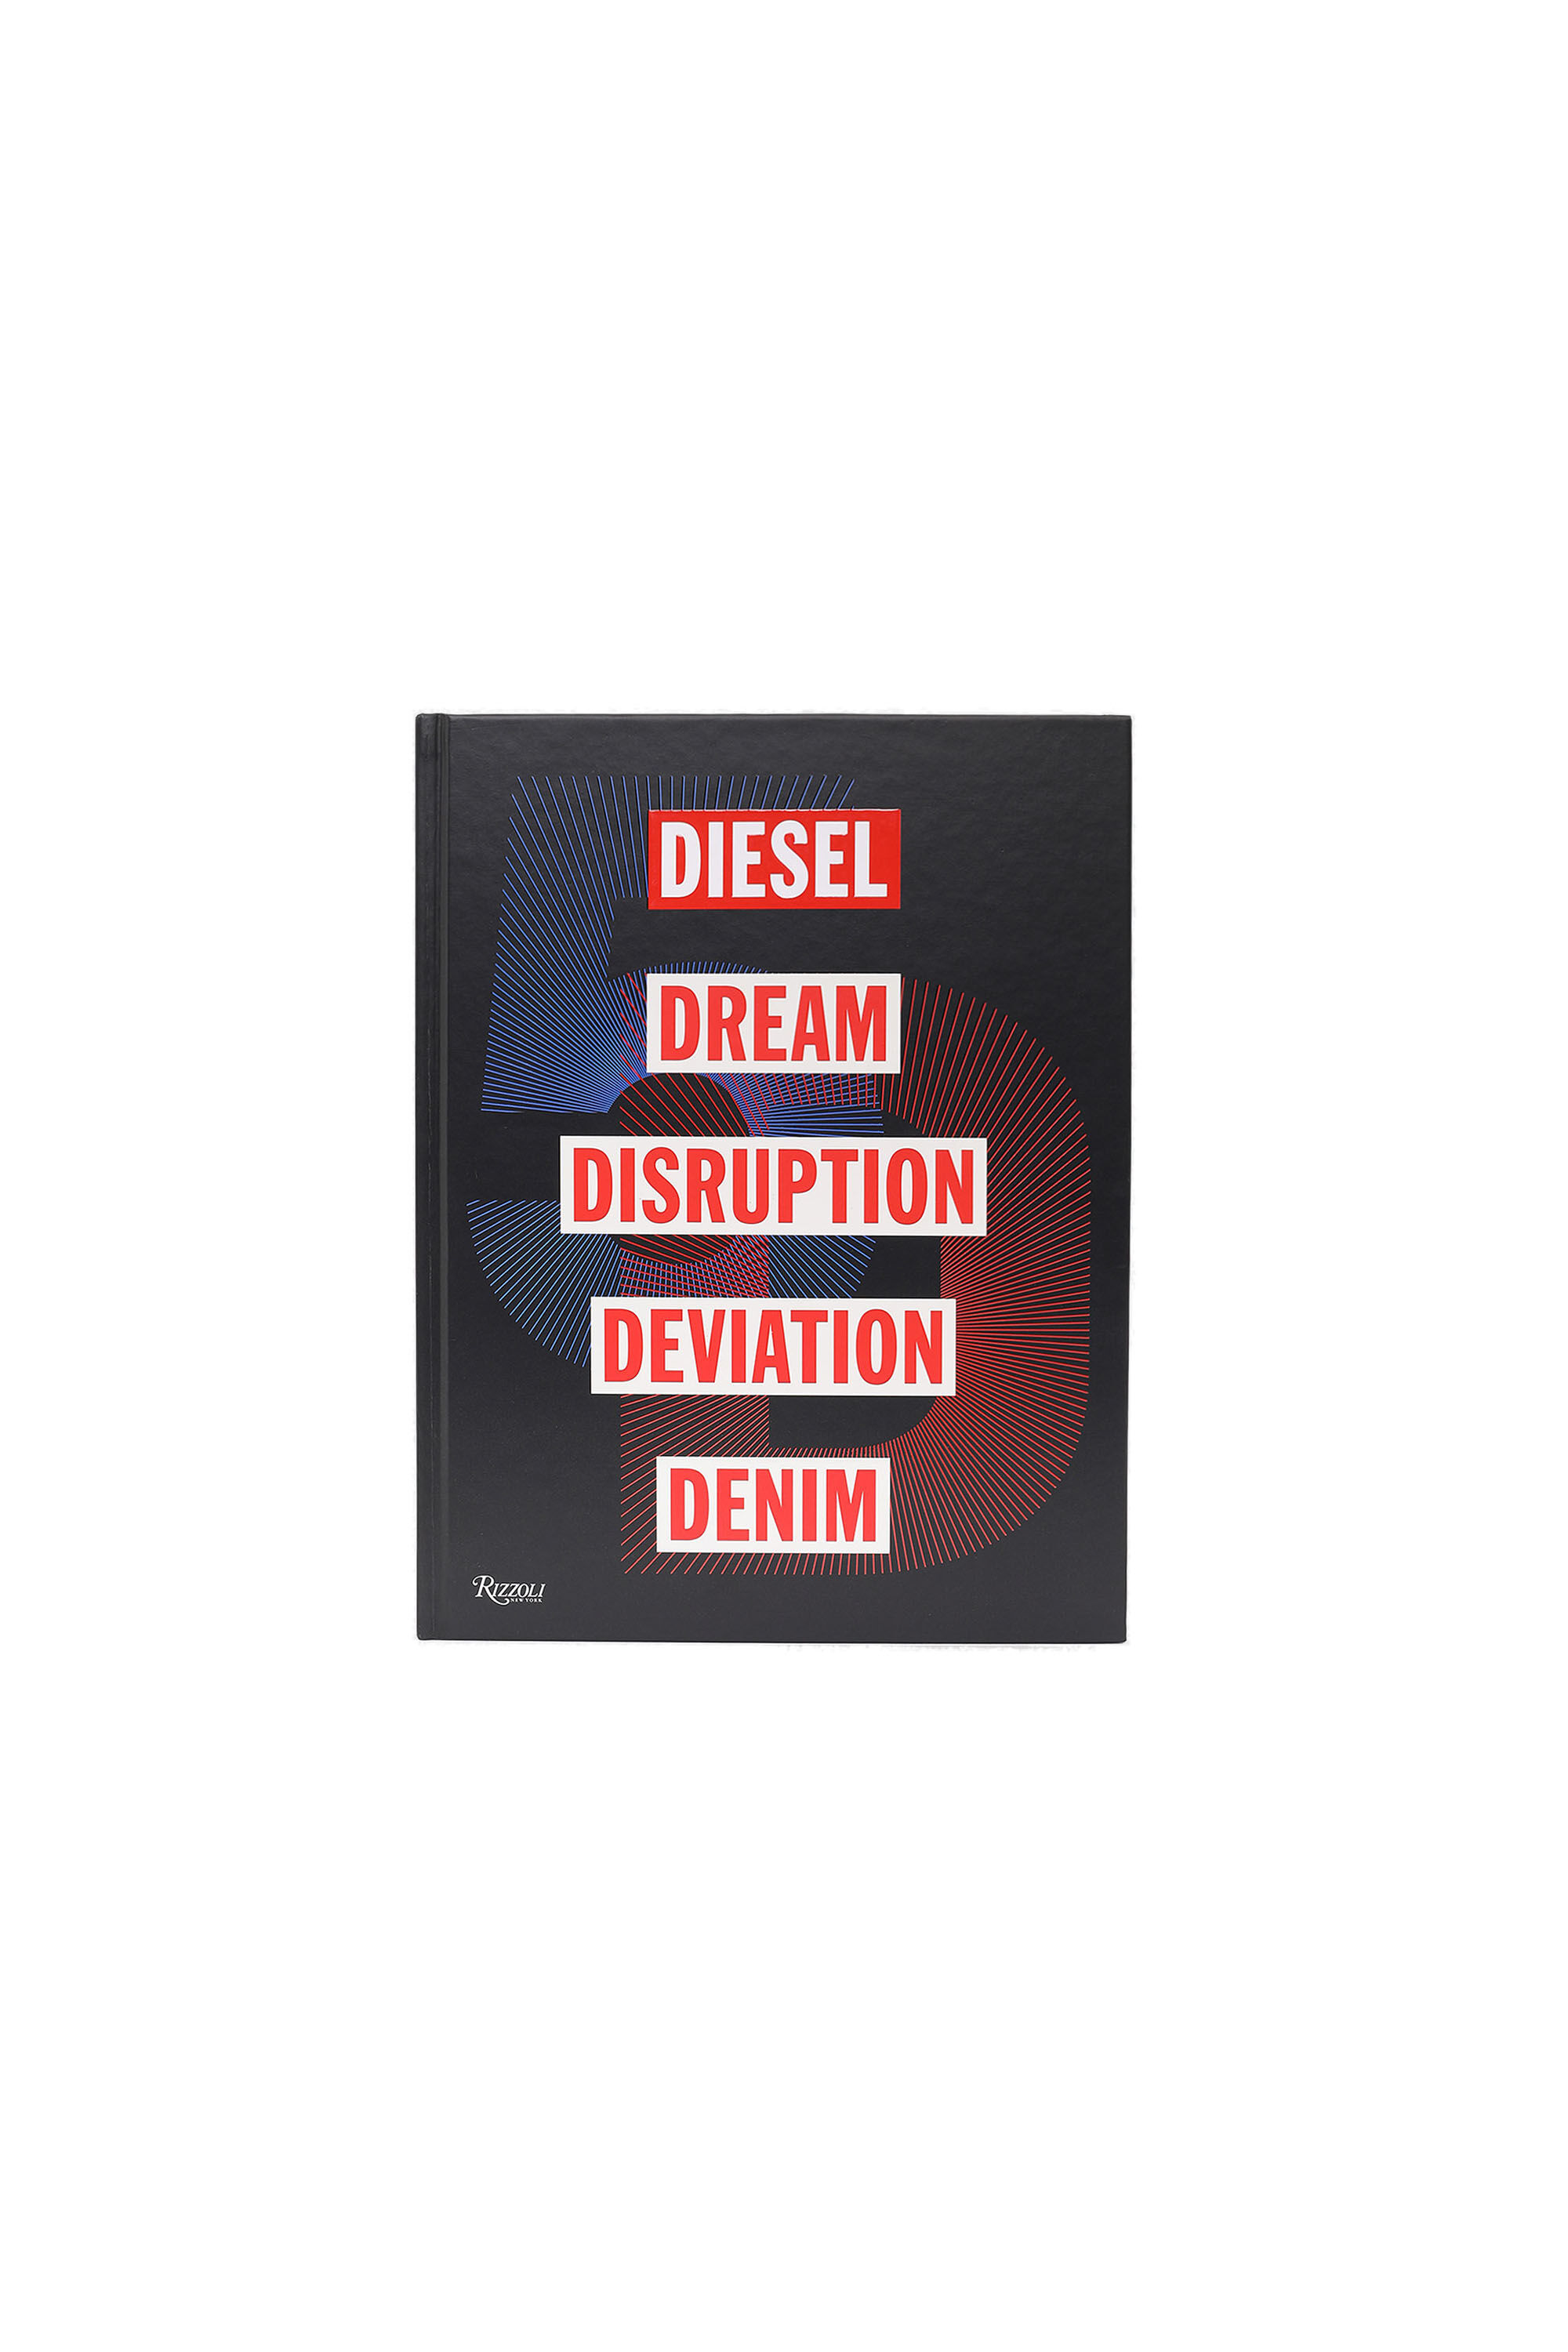 Diesel - 5D Diesel Dream Disruption Deviation Denim, Unisex Diesel Denim Book in Black - Image 1